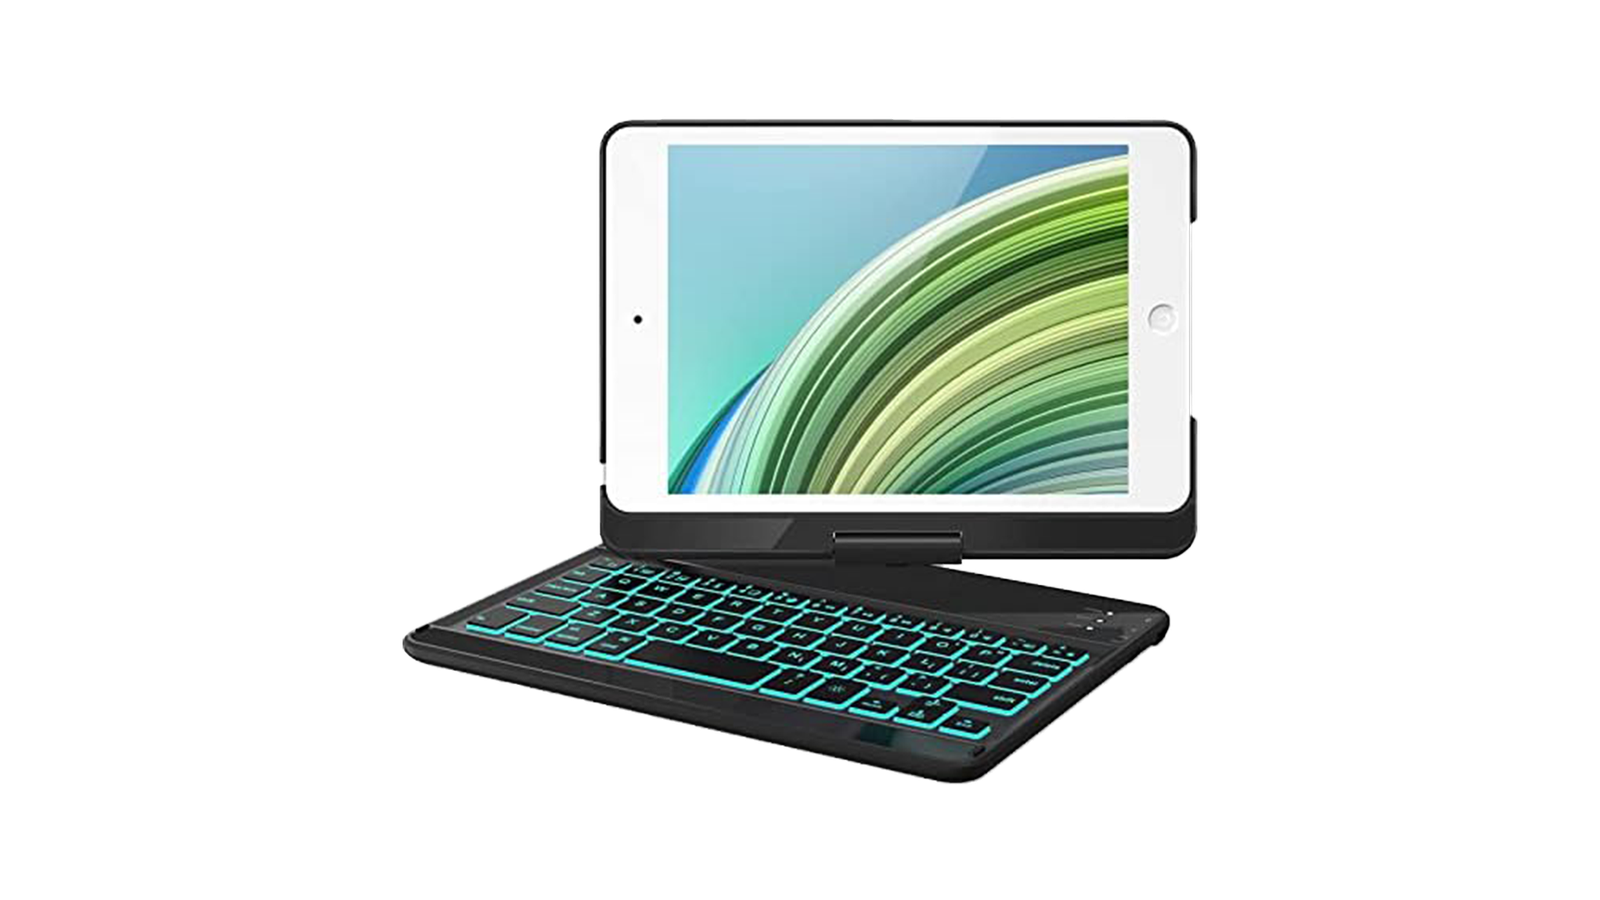 ONHI Wireless Keyboard Case for iPad Mini 5 - The best iPad mini 5 keyboard case